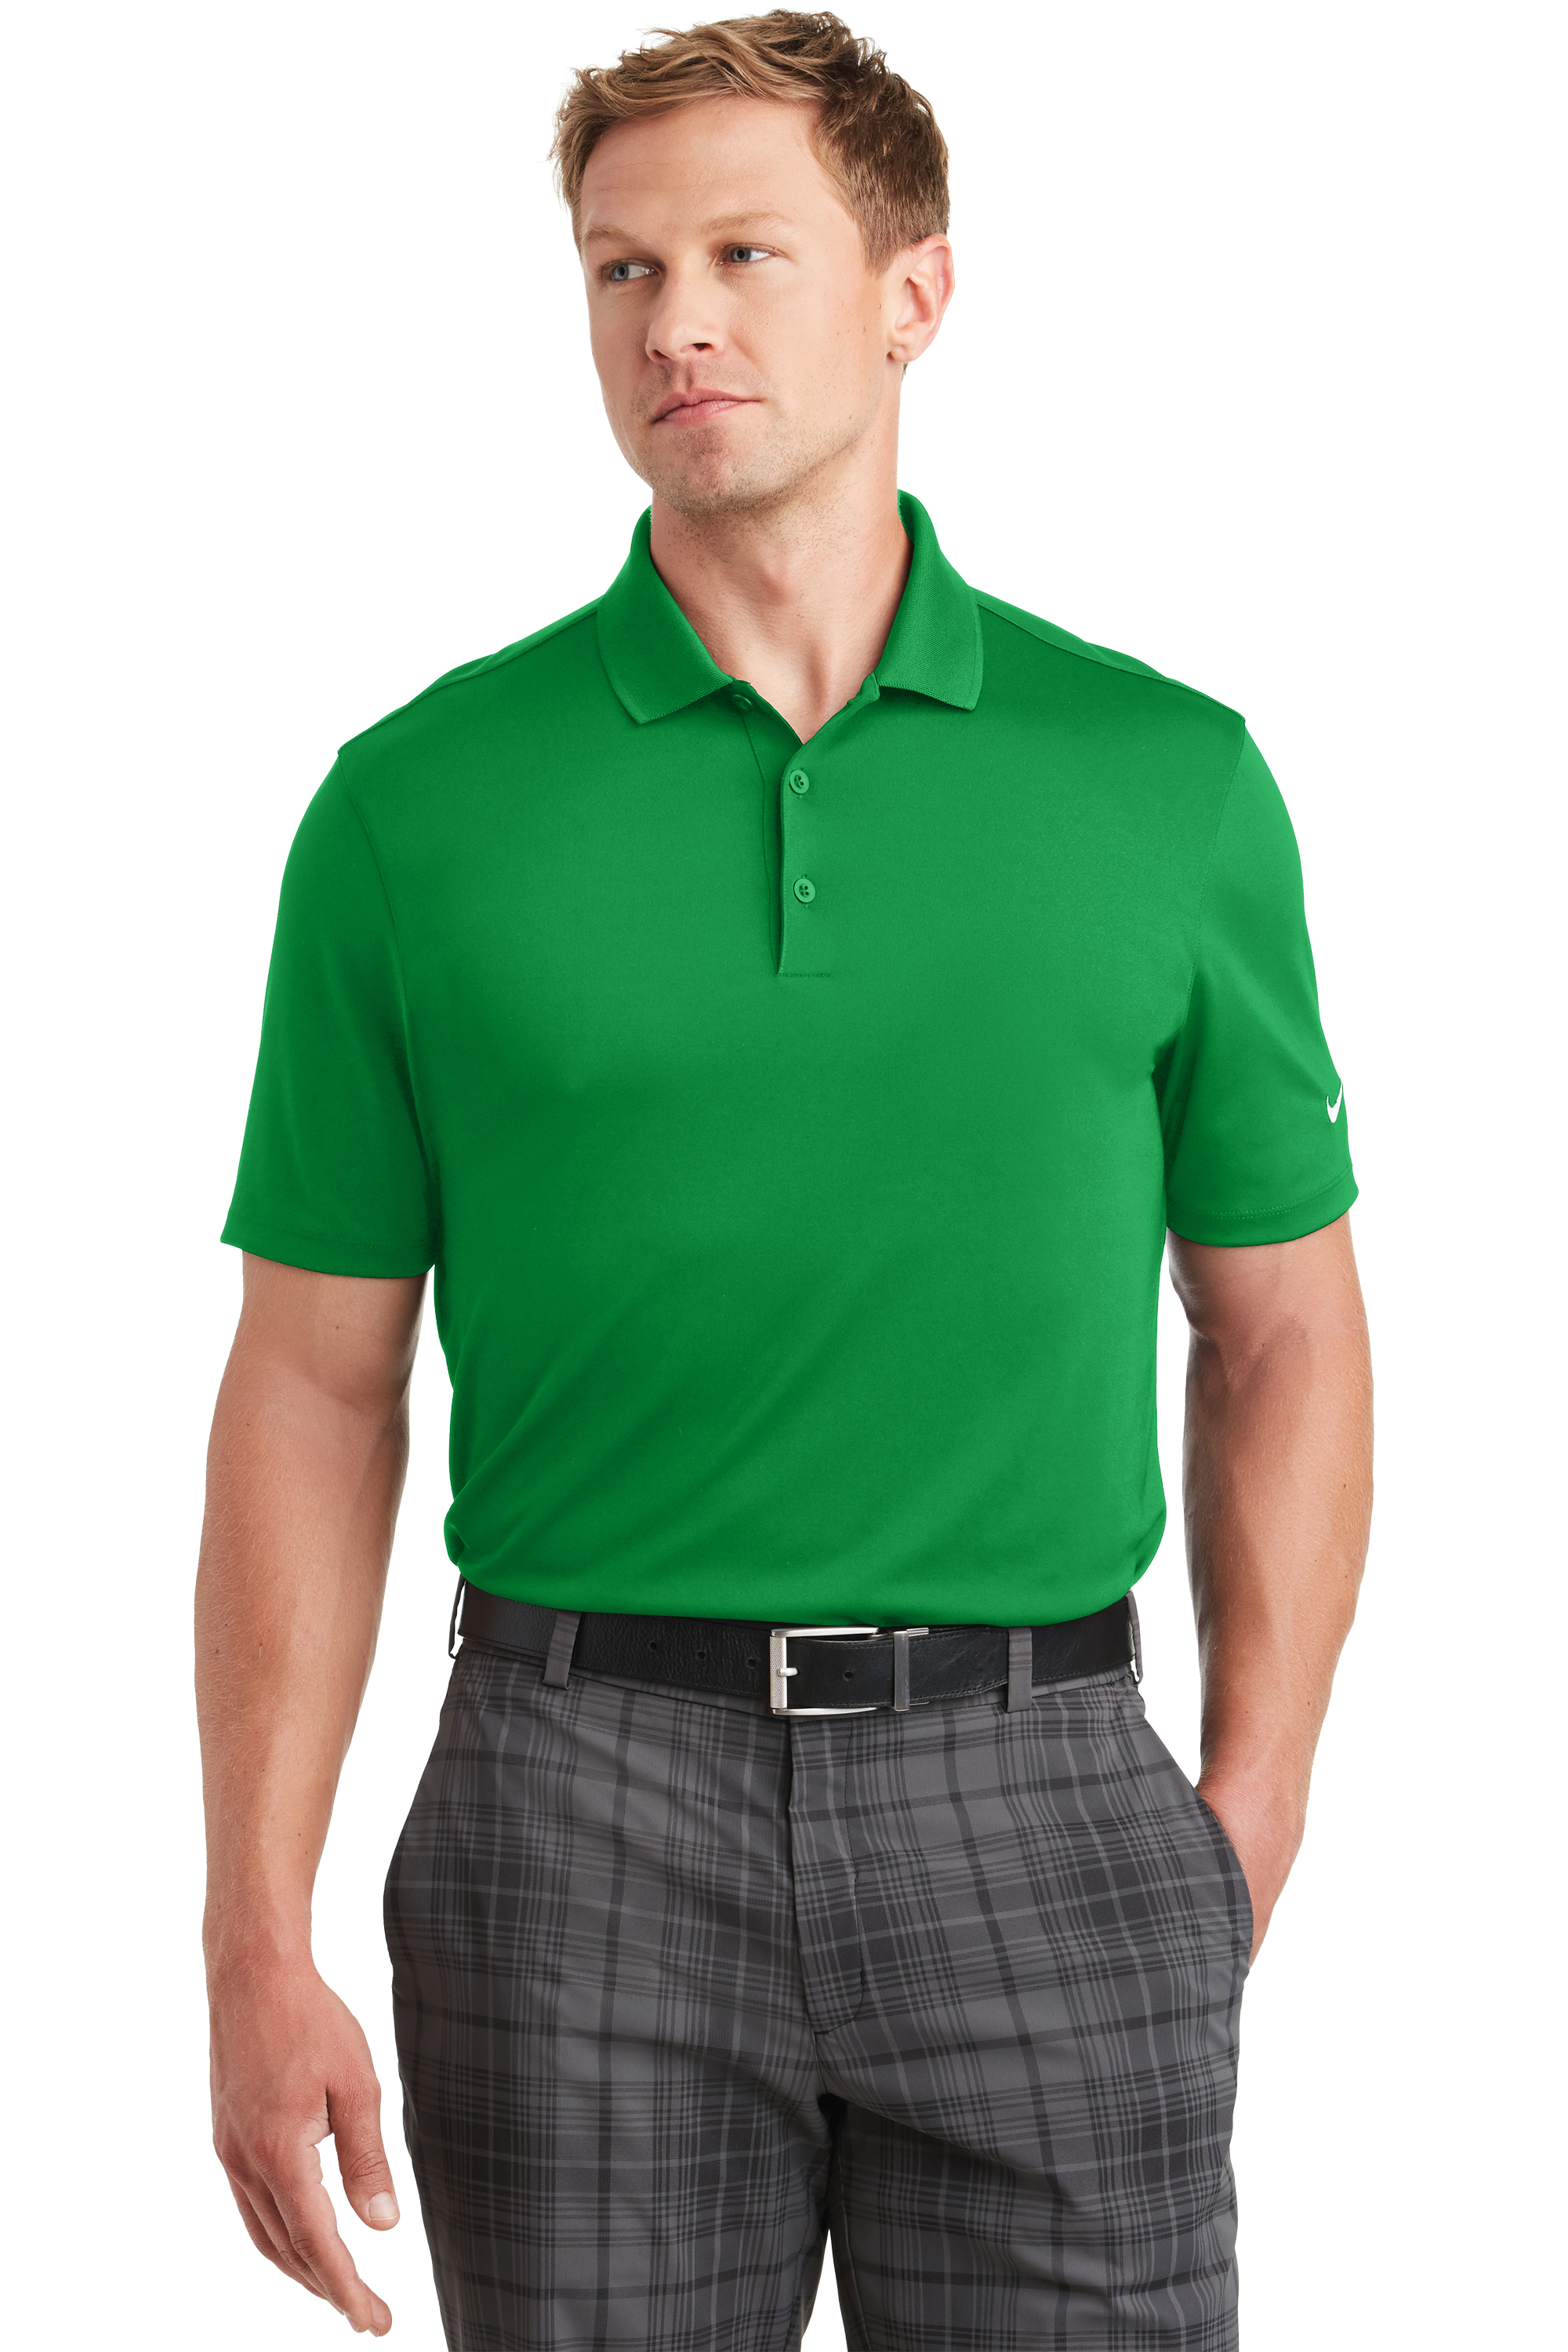 Nike Golf Men’s Dri-FIT Players Polo. 838956.